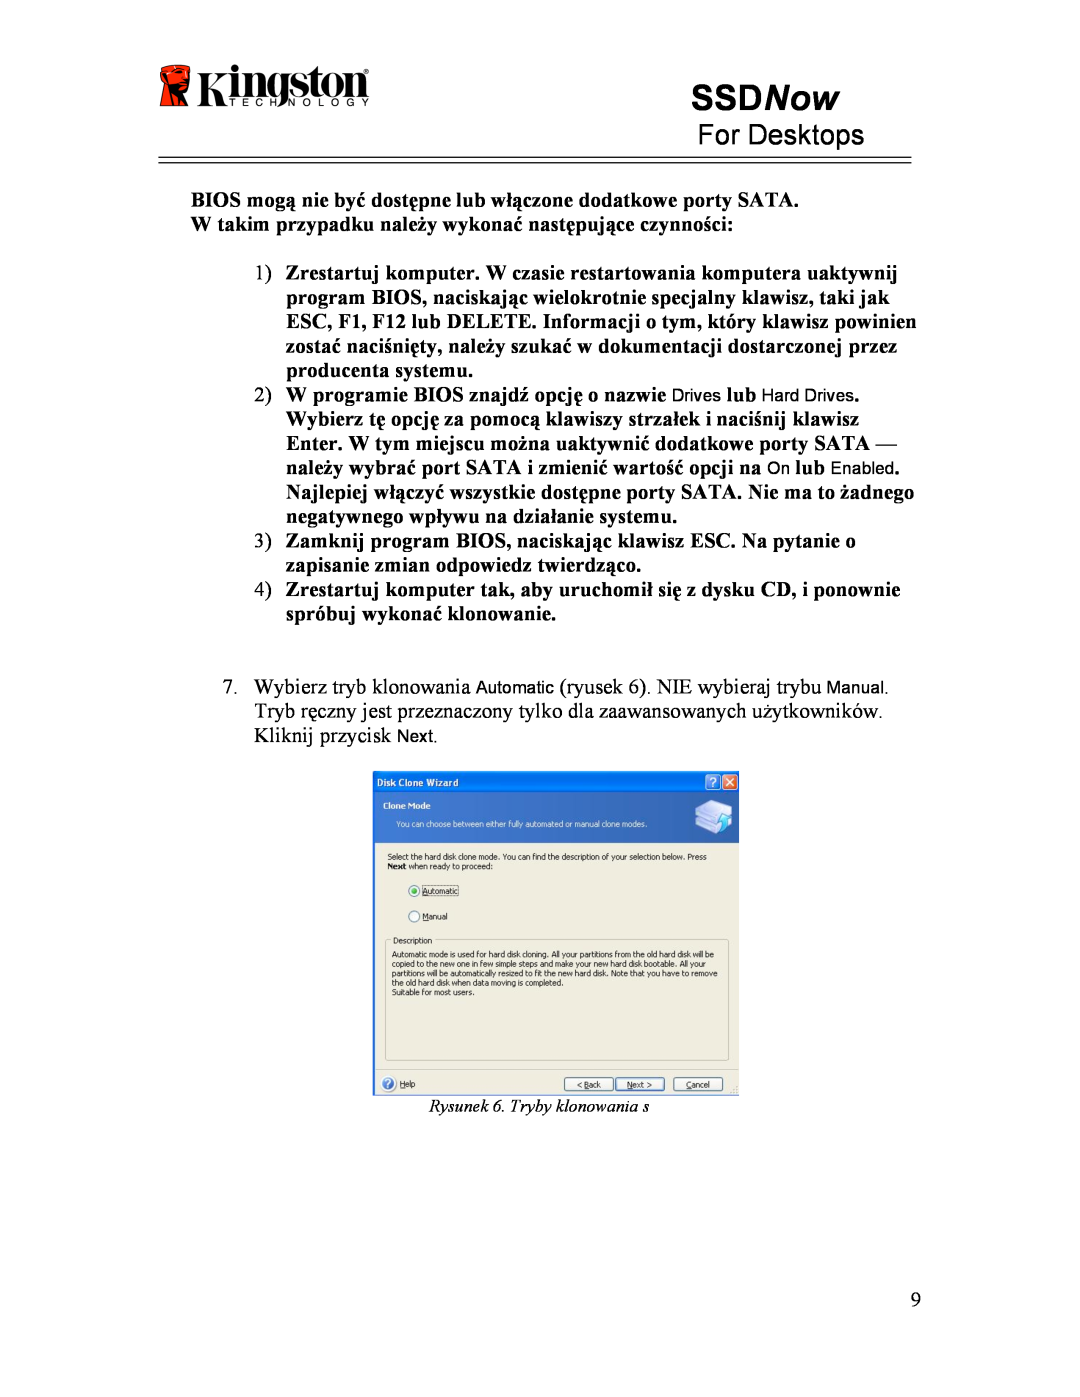 Kingston Technology 07-16-2009 manual SSDNow, For Desktops, BIOS mogą nie być dostępne lub włączone dodatkowe porty SATA 